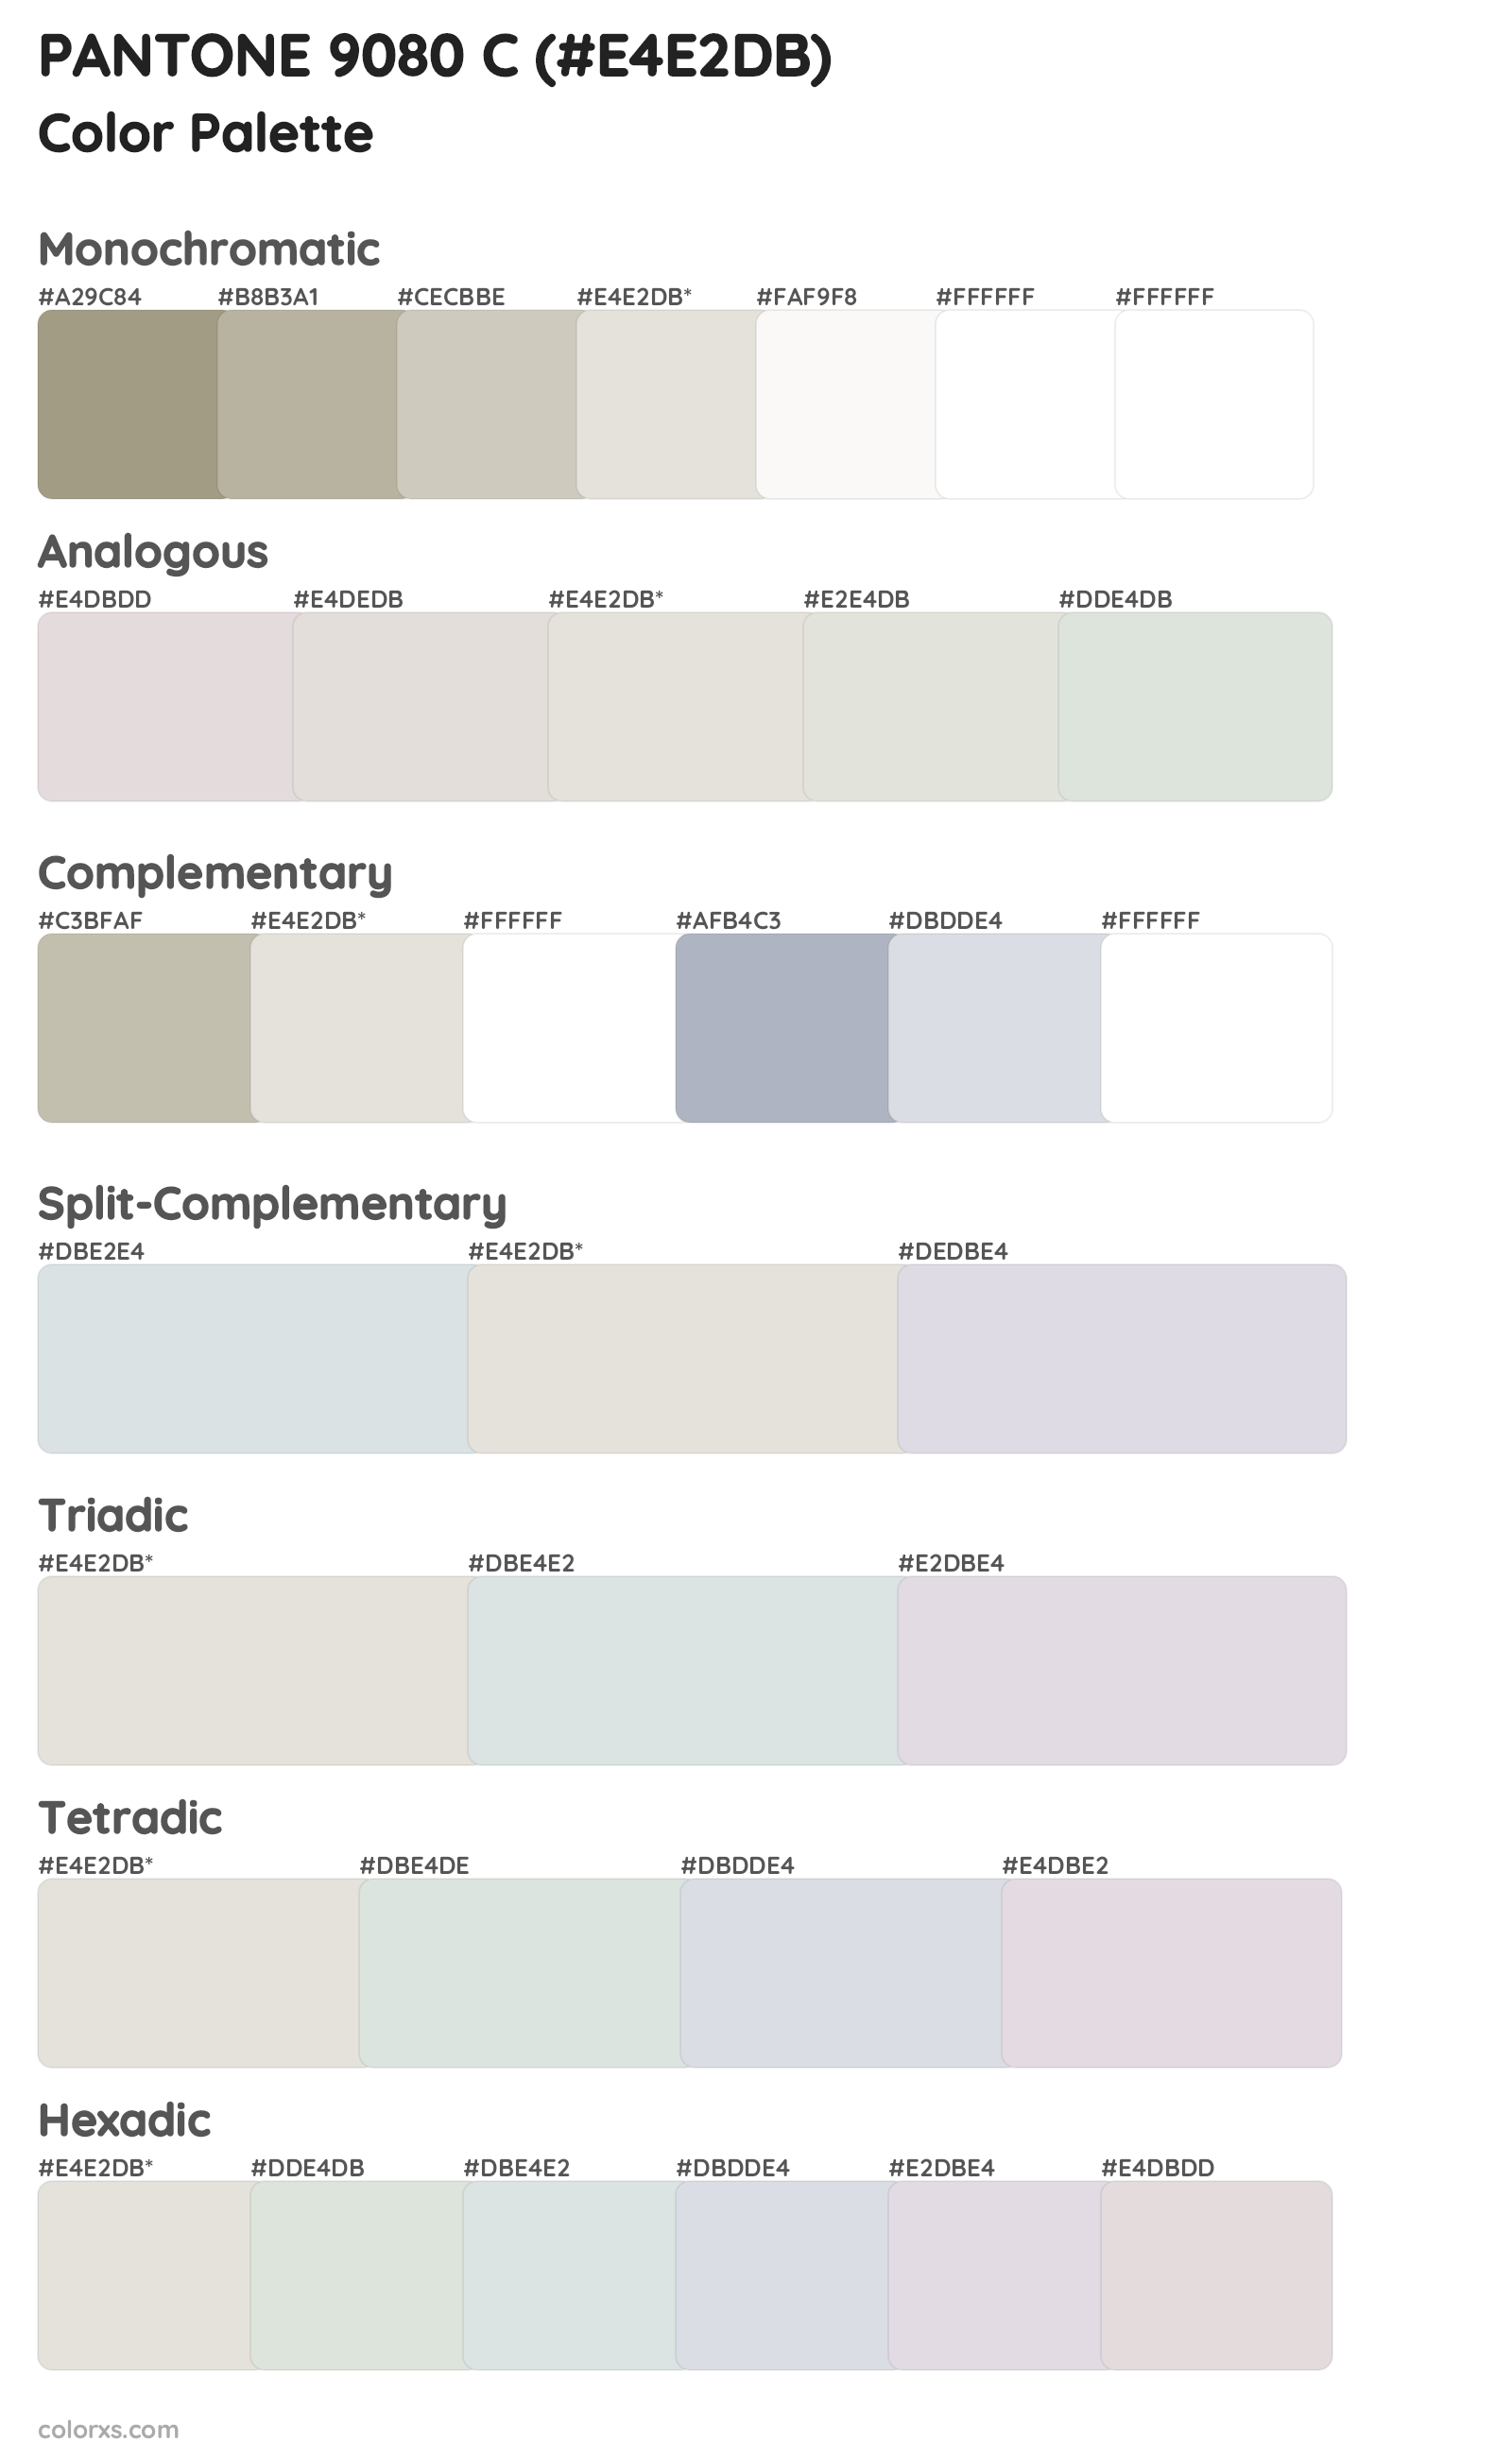 PANTONE 9080 C Color Scheme Palettes